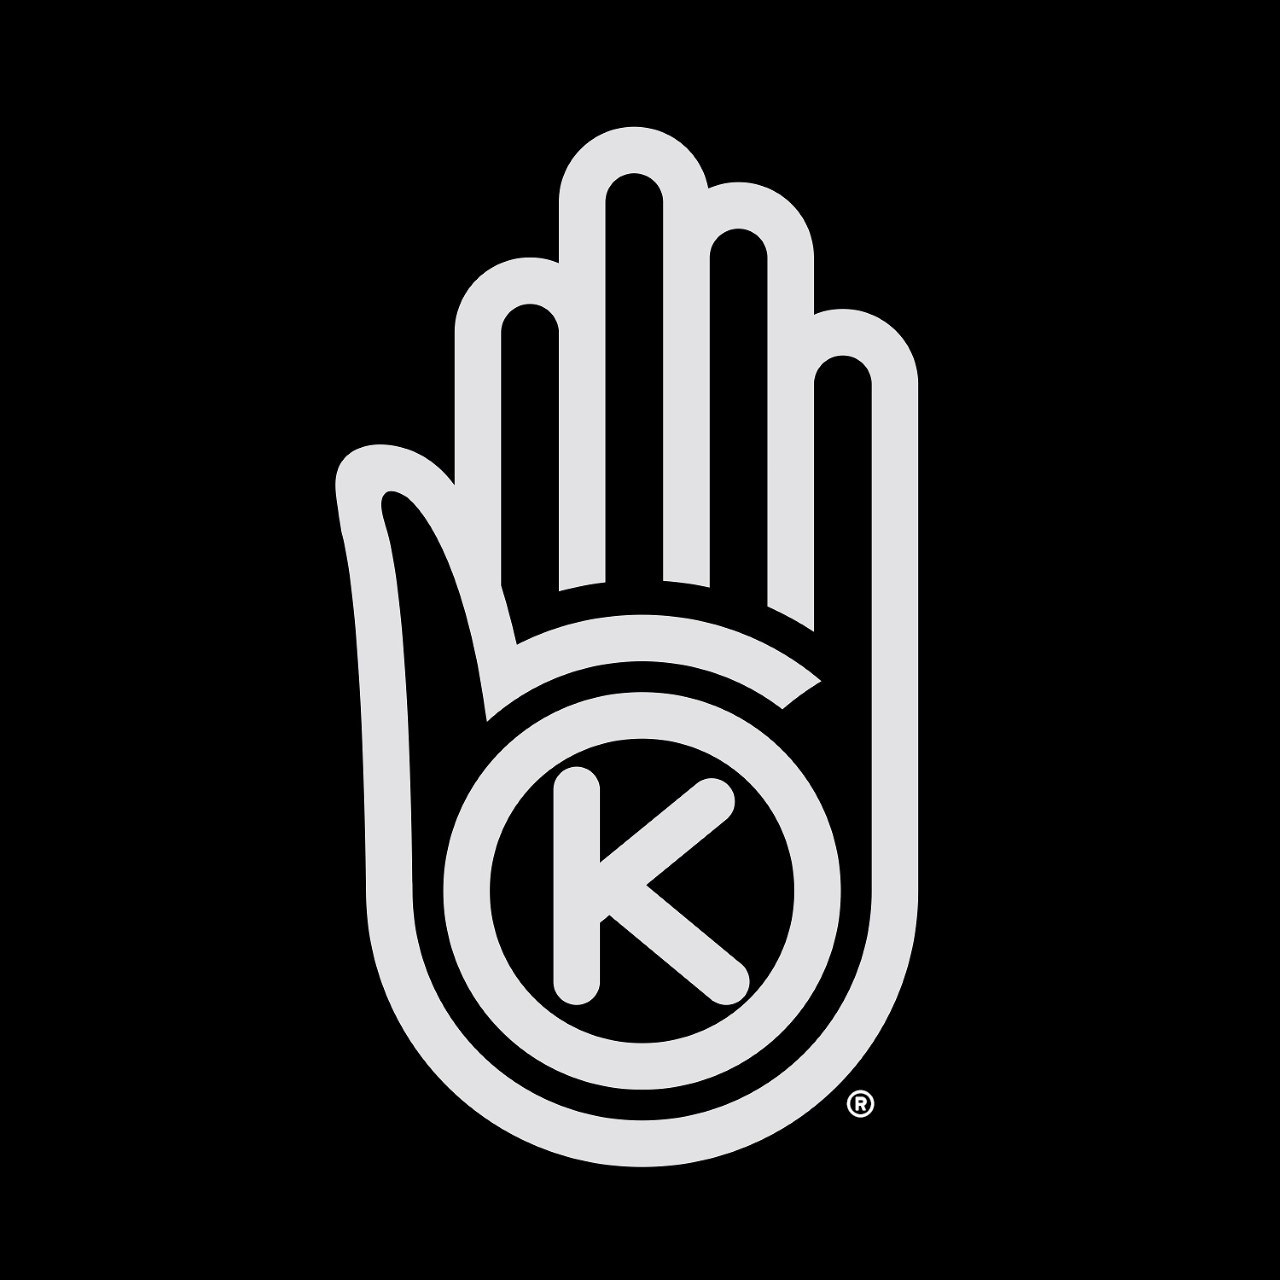 K-hand logo.jpg (75 KB)